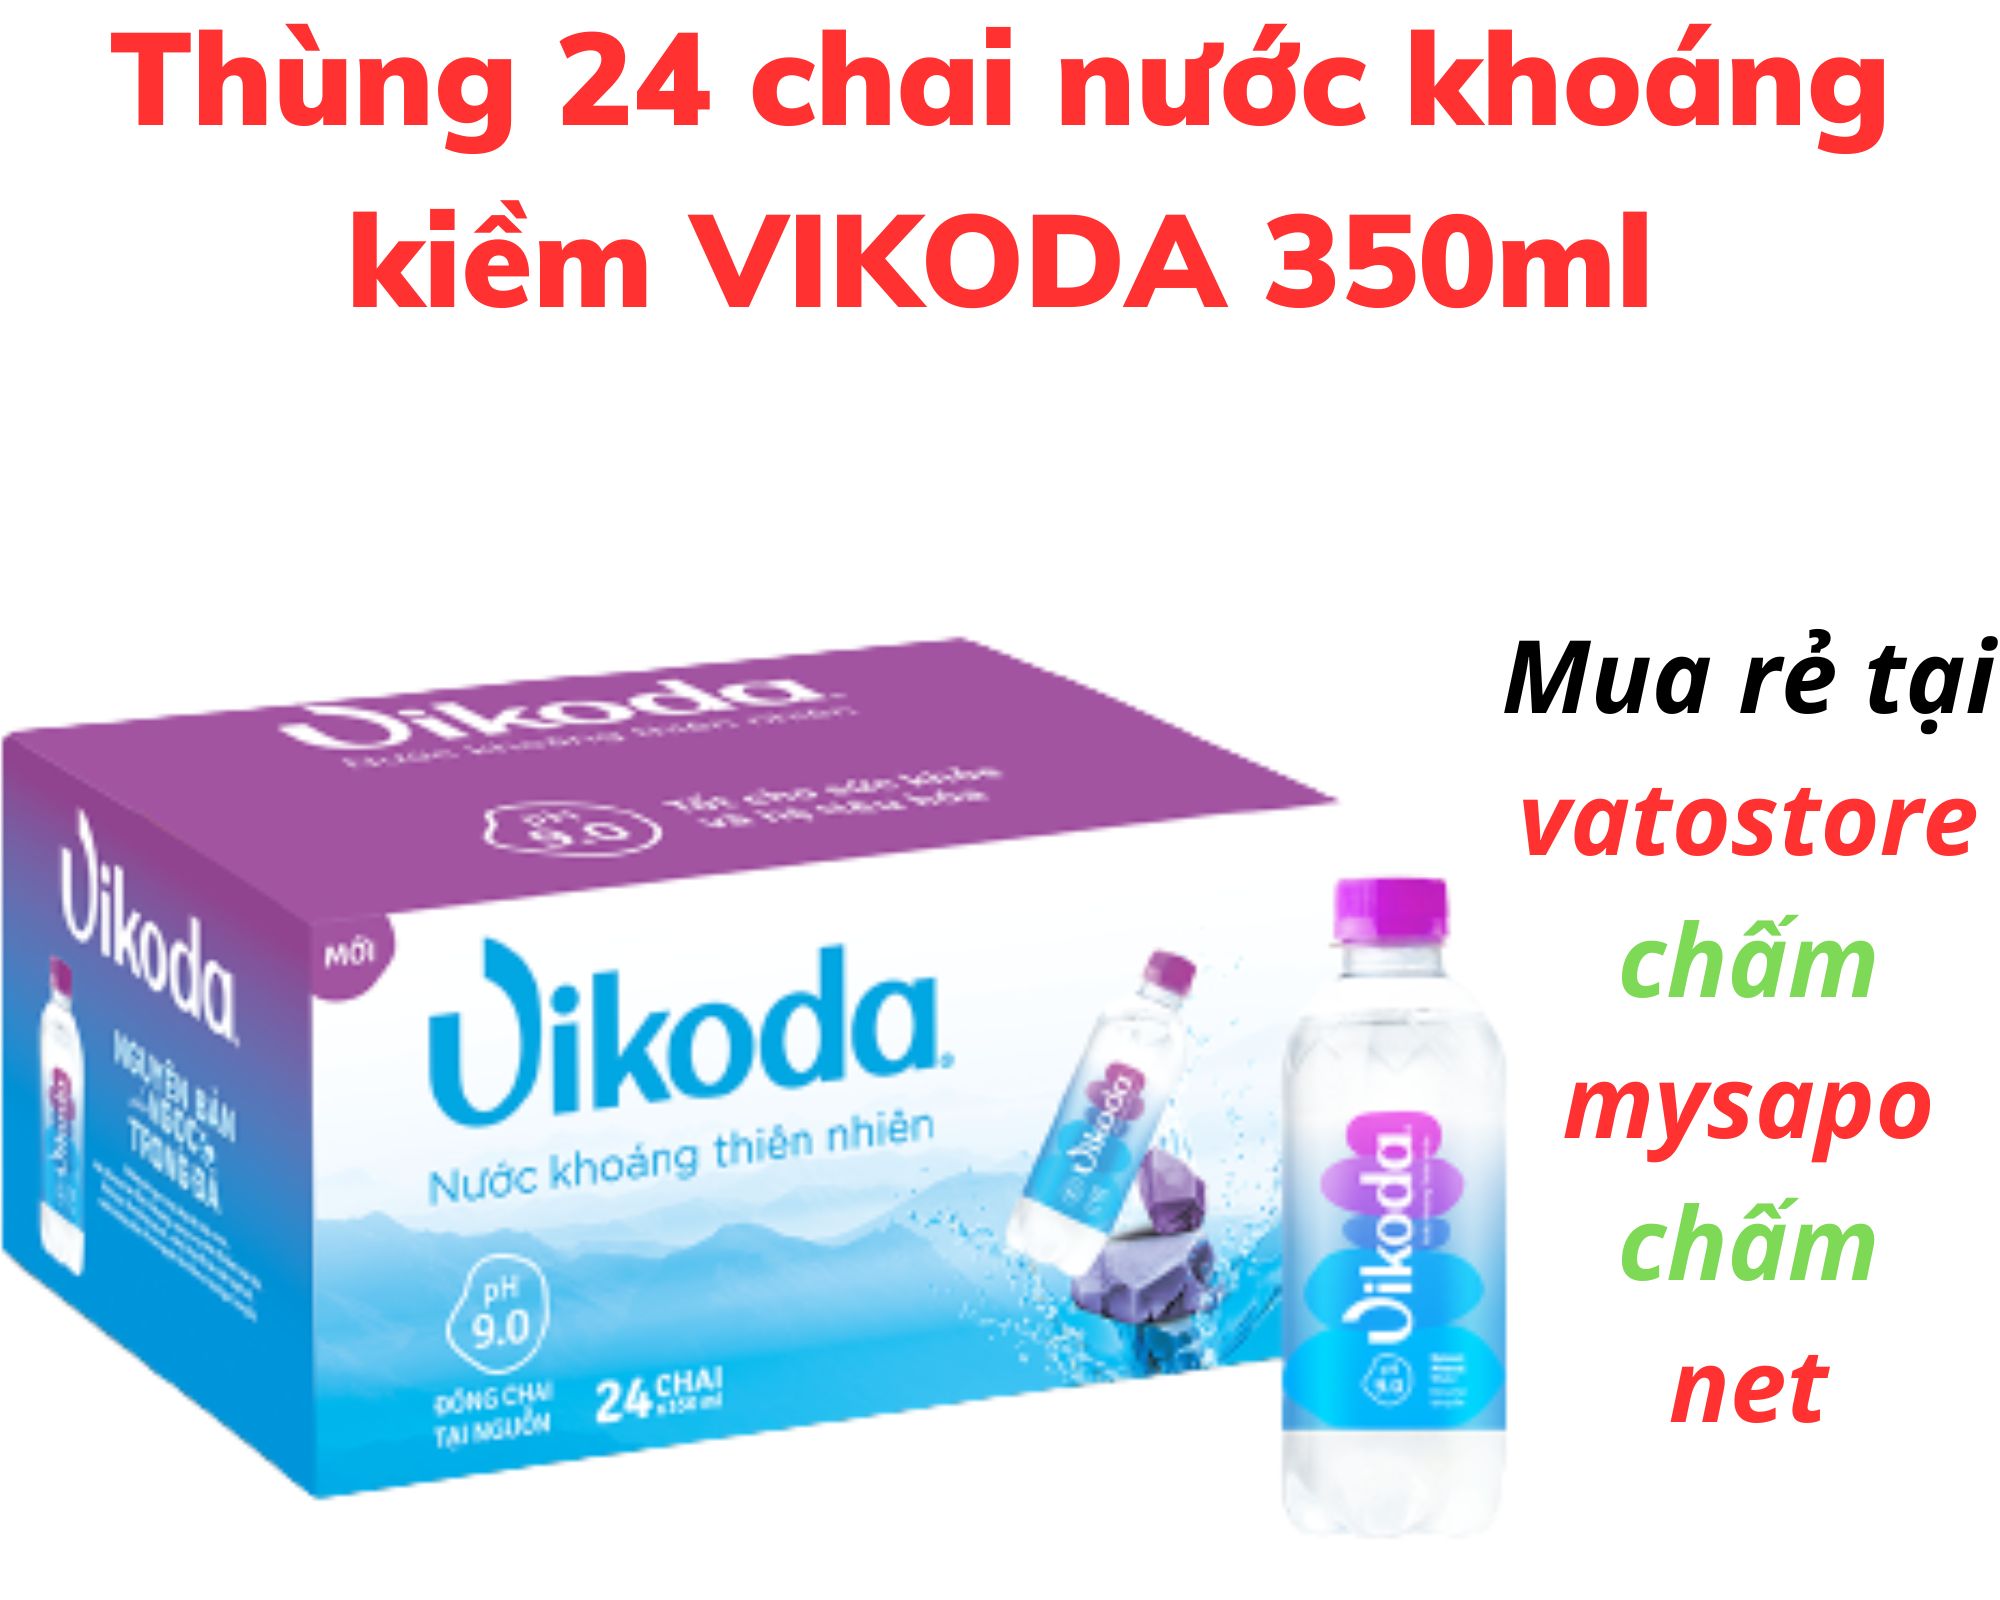 Thùng 24 chai nước khoáng kiềm VIKODA 350ml Lốc 6 chai nước khoáng kiềm